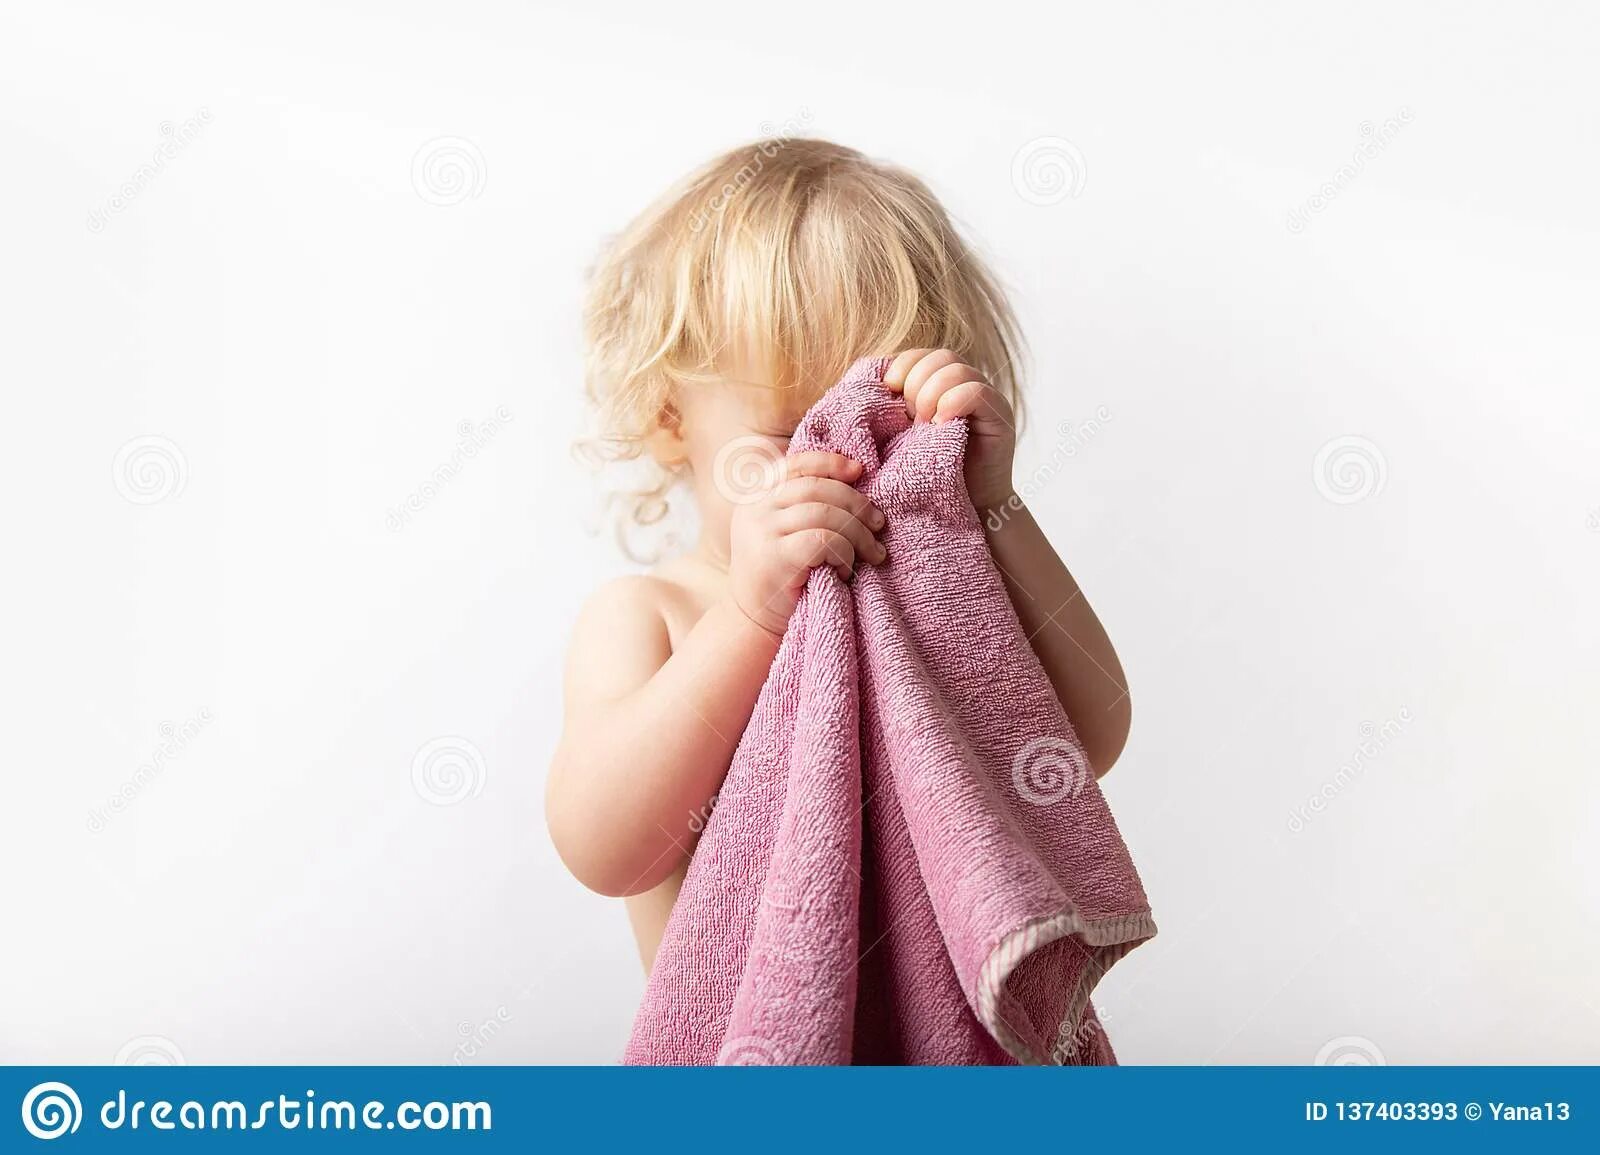 Чужим полотенцем. Вытираться полотенцем. Дети вытирают руки. Детки вытираются полотенцем. Девочка вытирает лицо полотенцем.